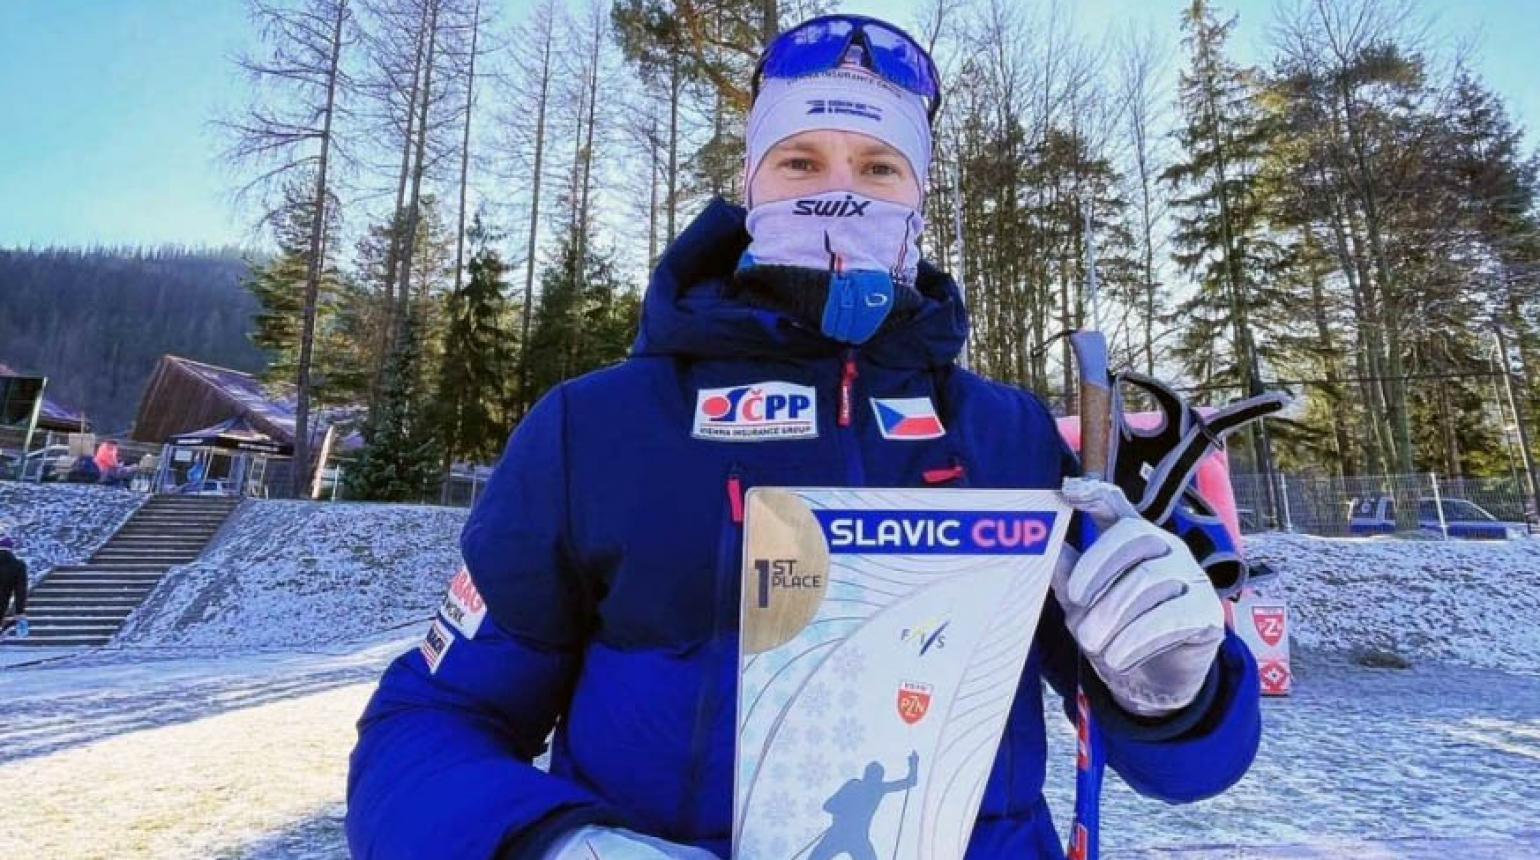 Knop zvítězil na Slavic Cupu v Zakopaném! Konal se také OPA Cup